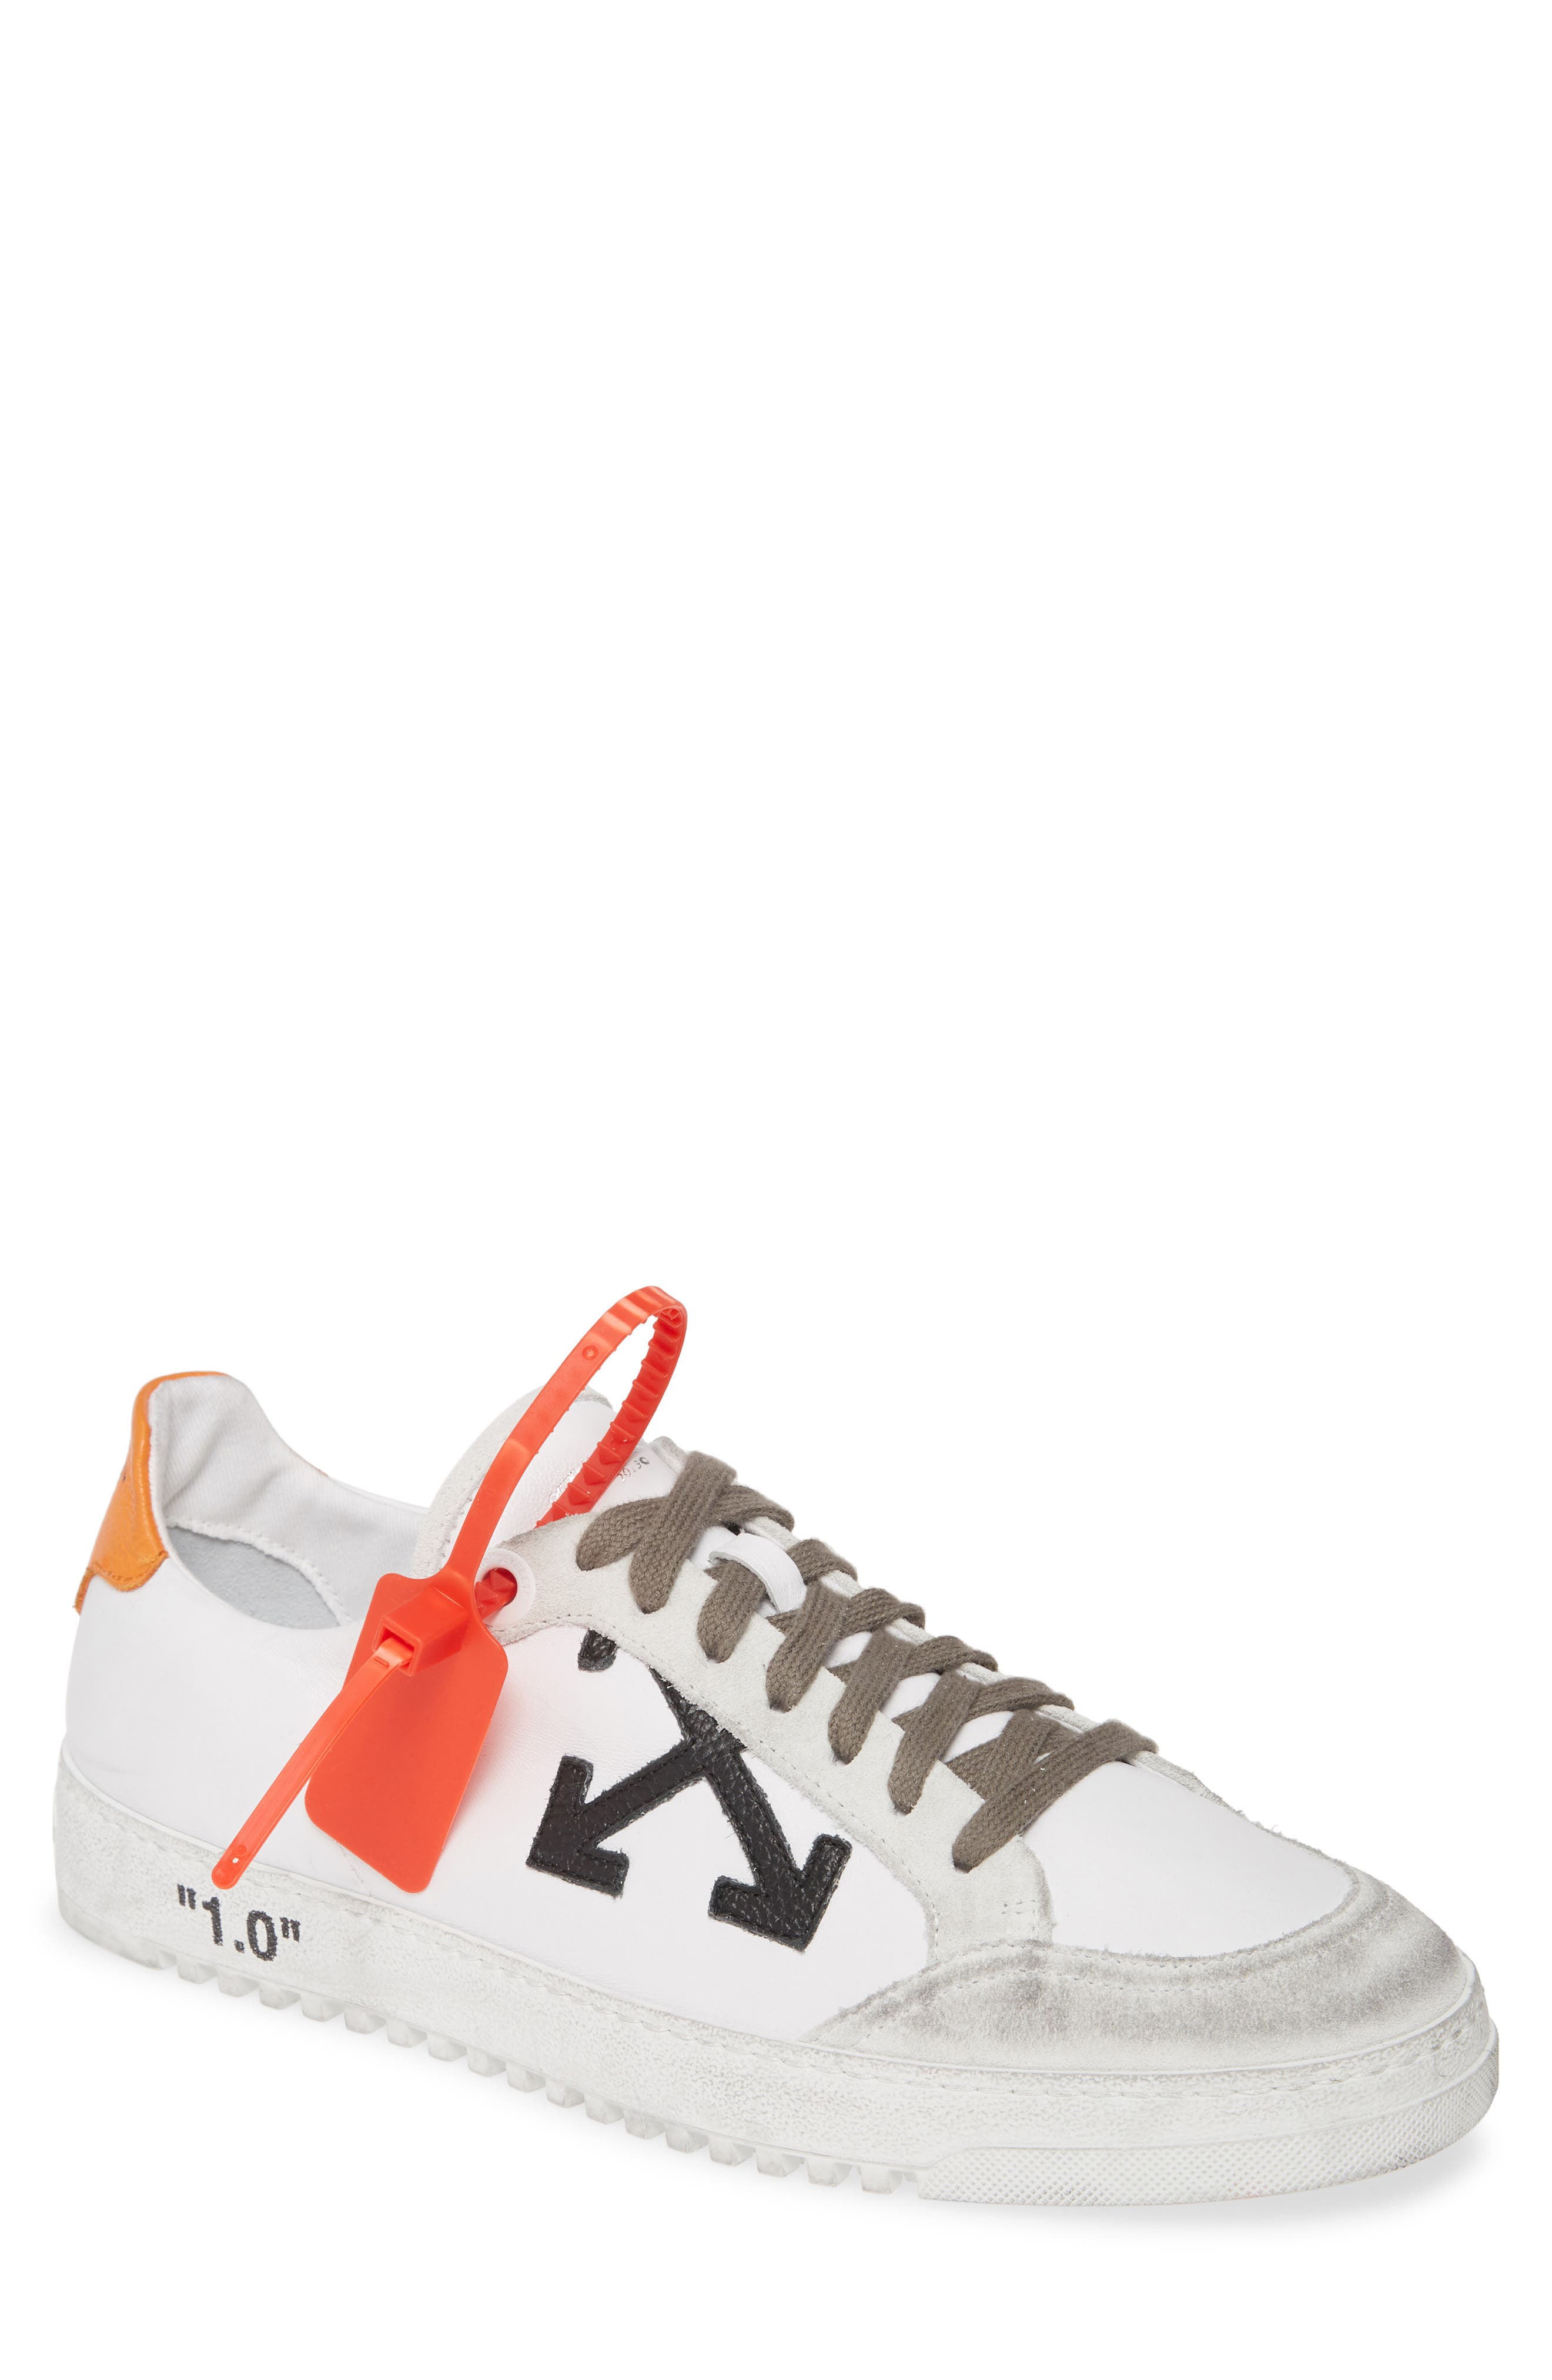 Off-White 2.0 Sneaker (Men) | Nordstrom